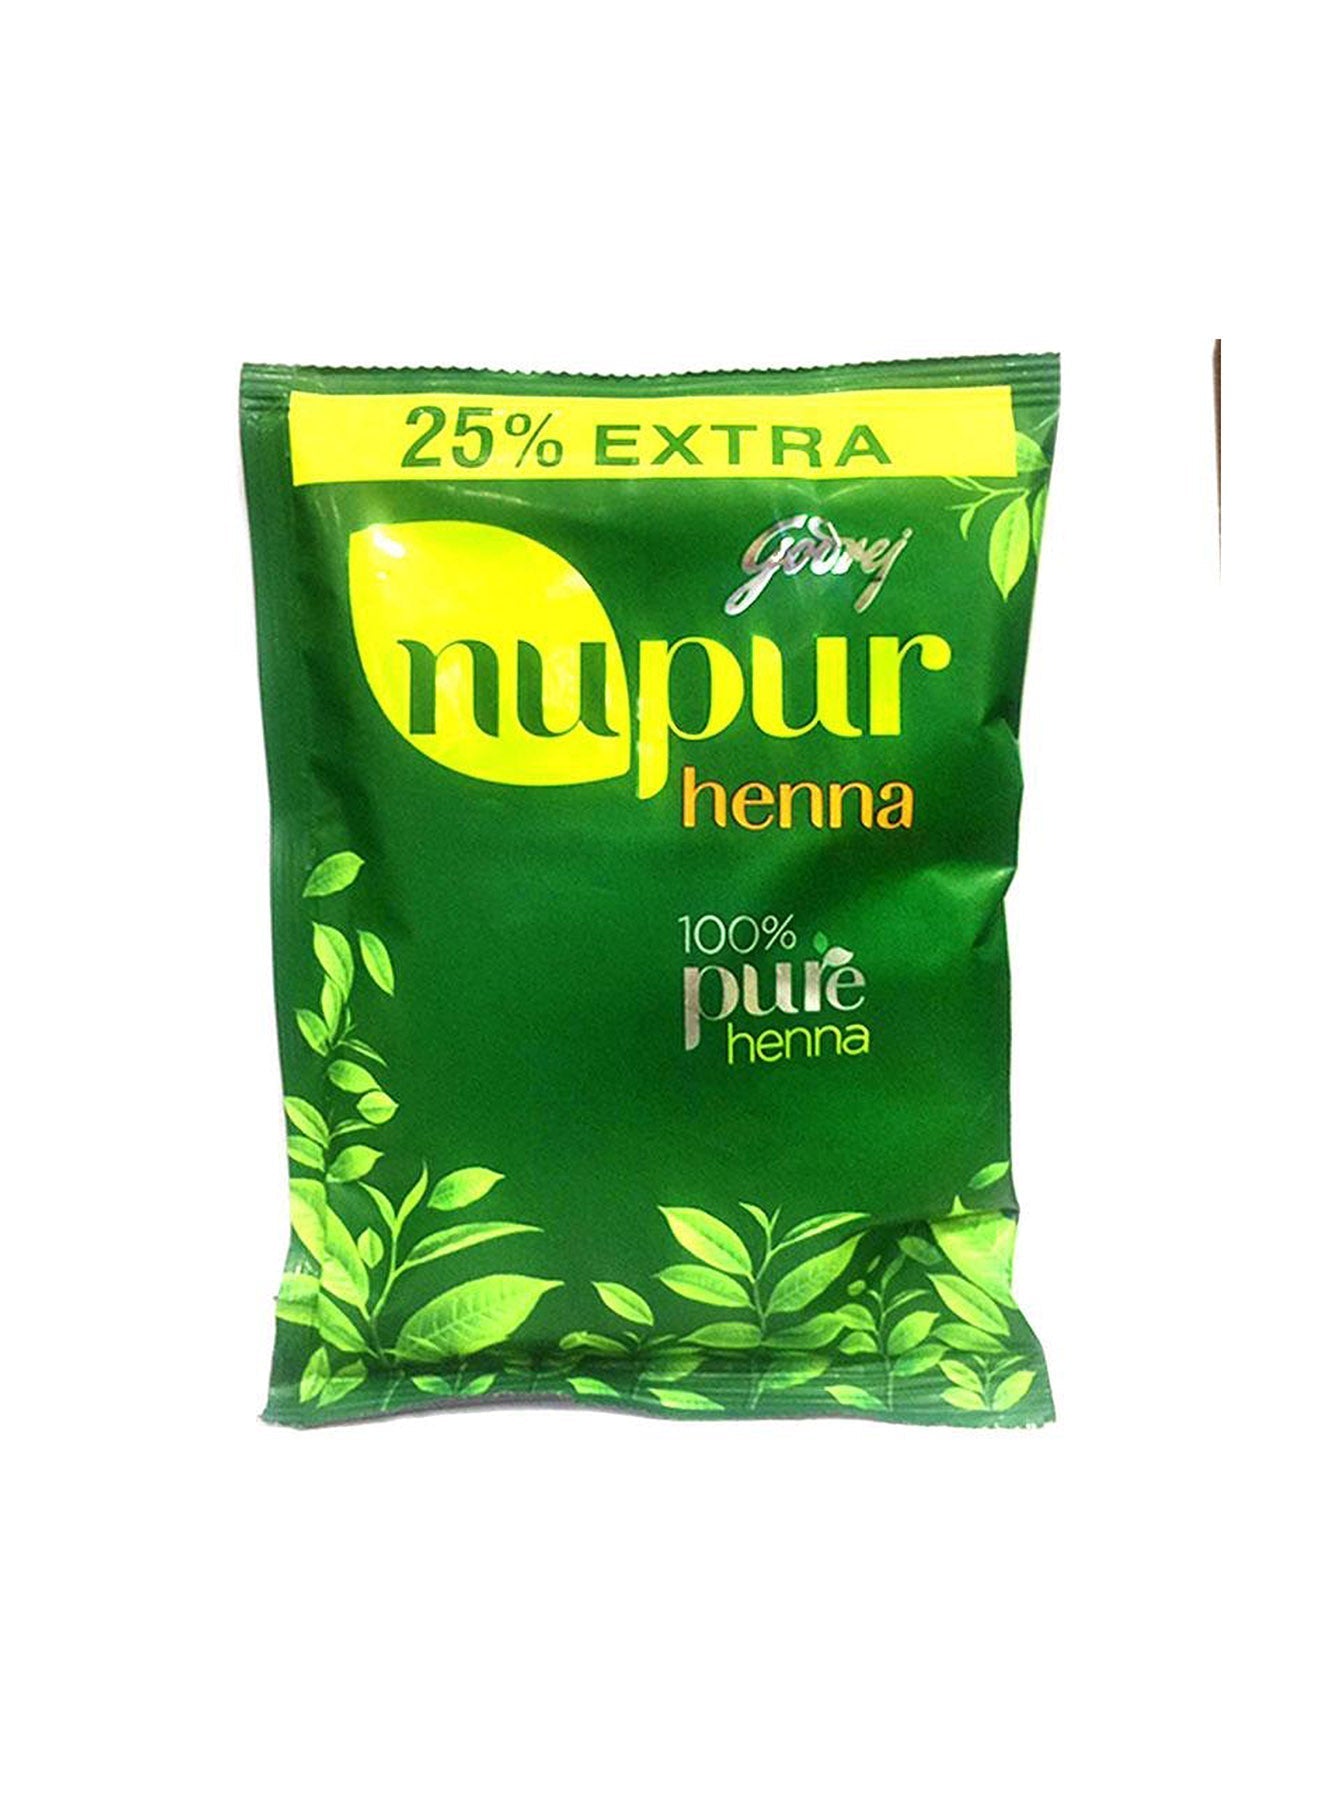 Godrej Nupur Henna 100 Pure Henna 25 Extra 150g Value Pack of 2 